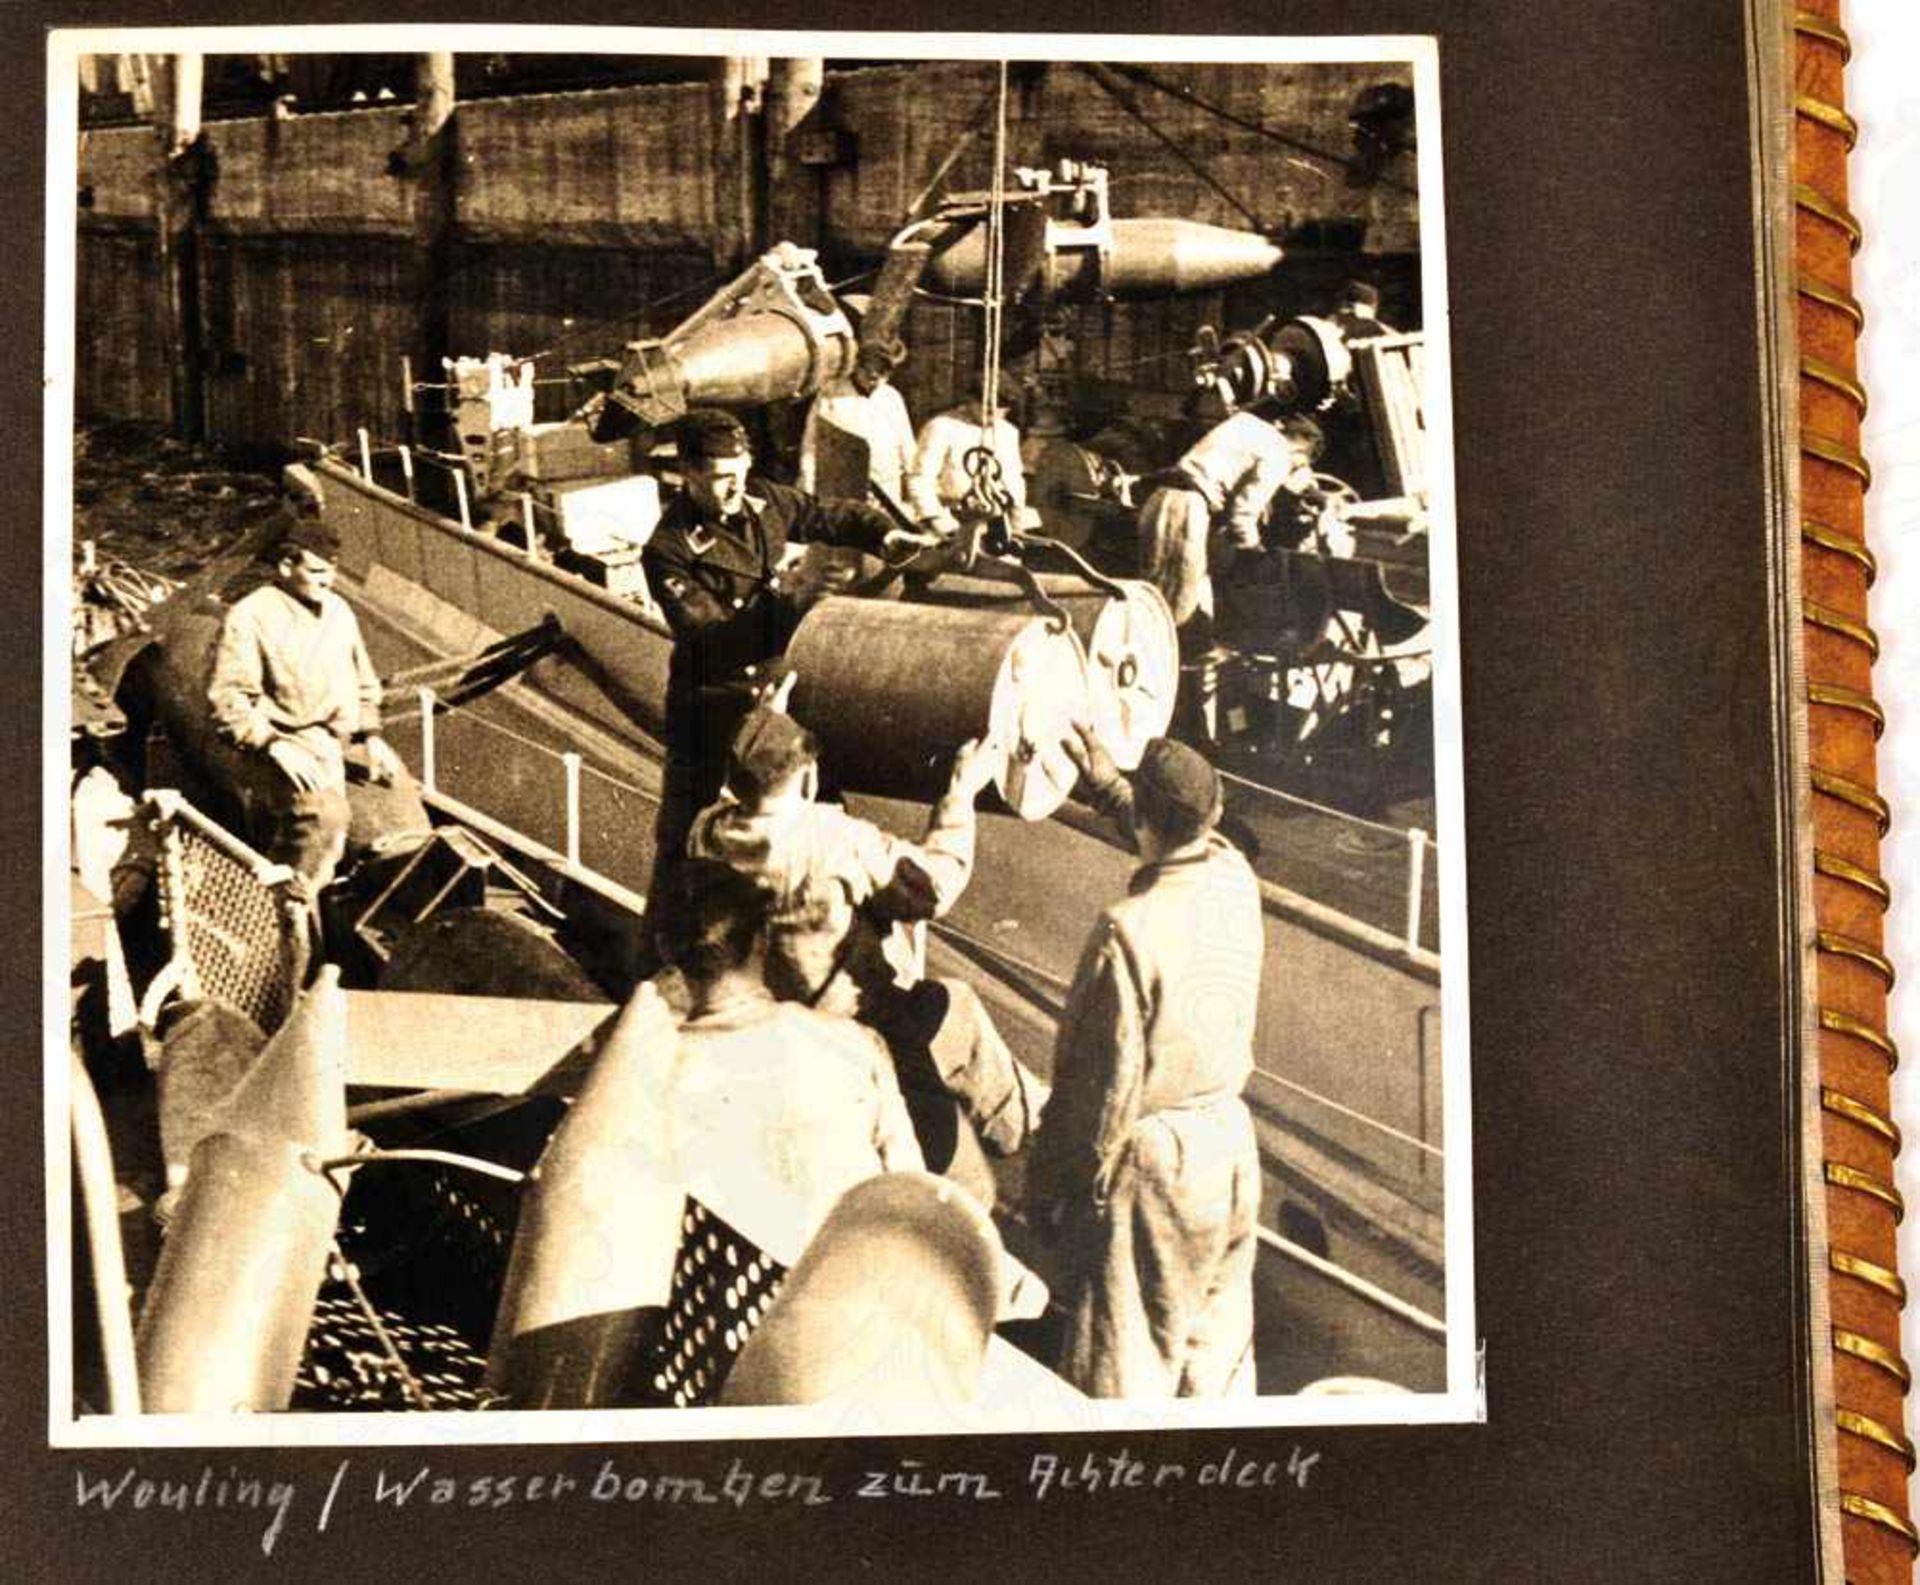 FOTOALBUM EINES OBERMAATEN, auf Minensuchboot M 29 (3. Minensuchflottille), ca. 85 Aufnahmen, tls. - Image 6 of 10